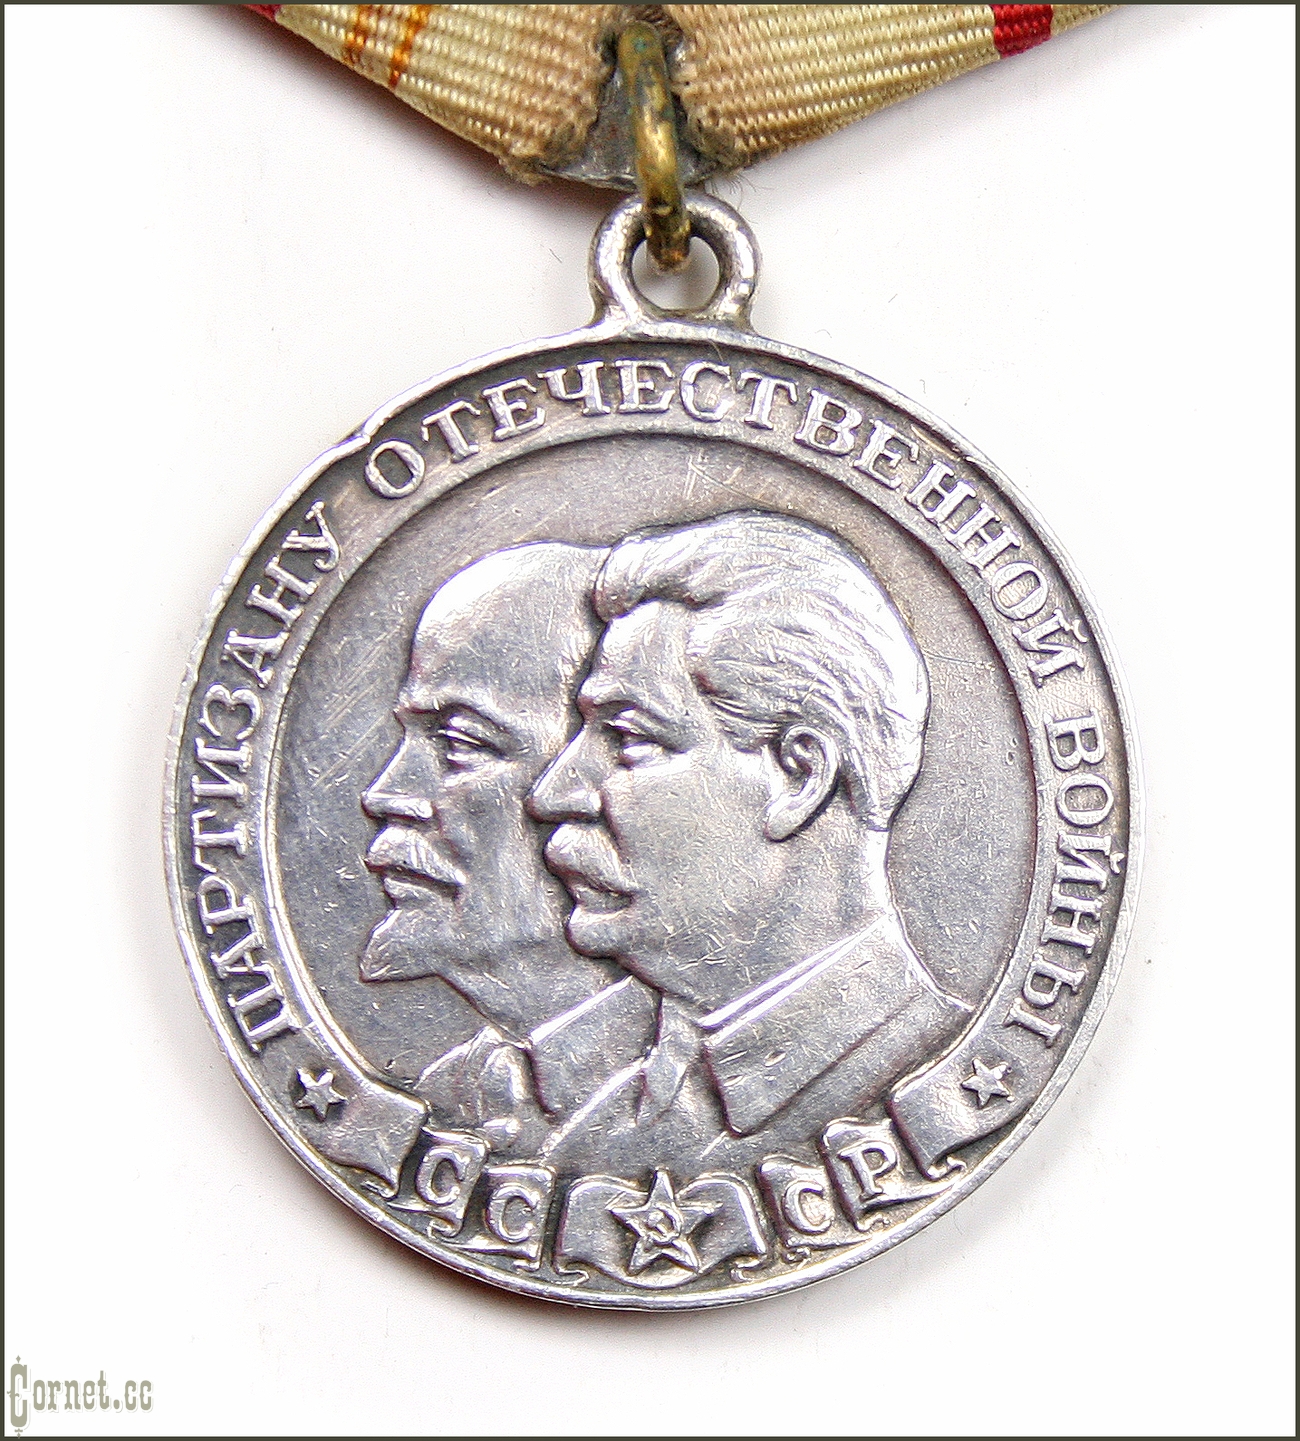 Медаль "Партизану Отечественной войны" I степени